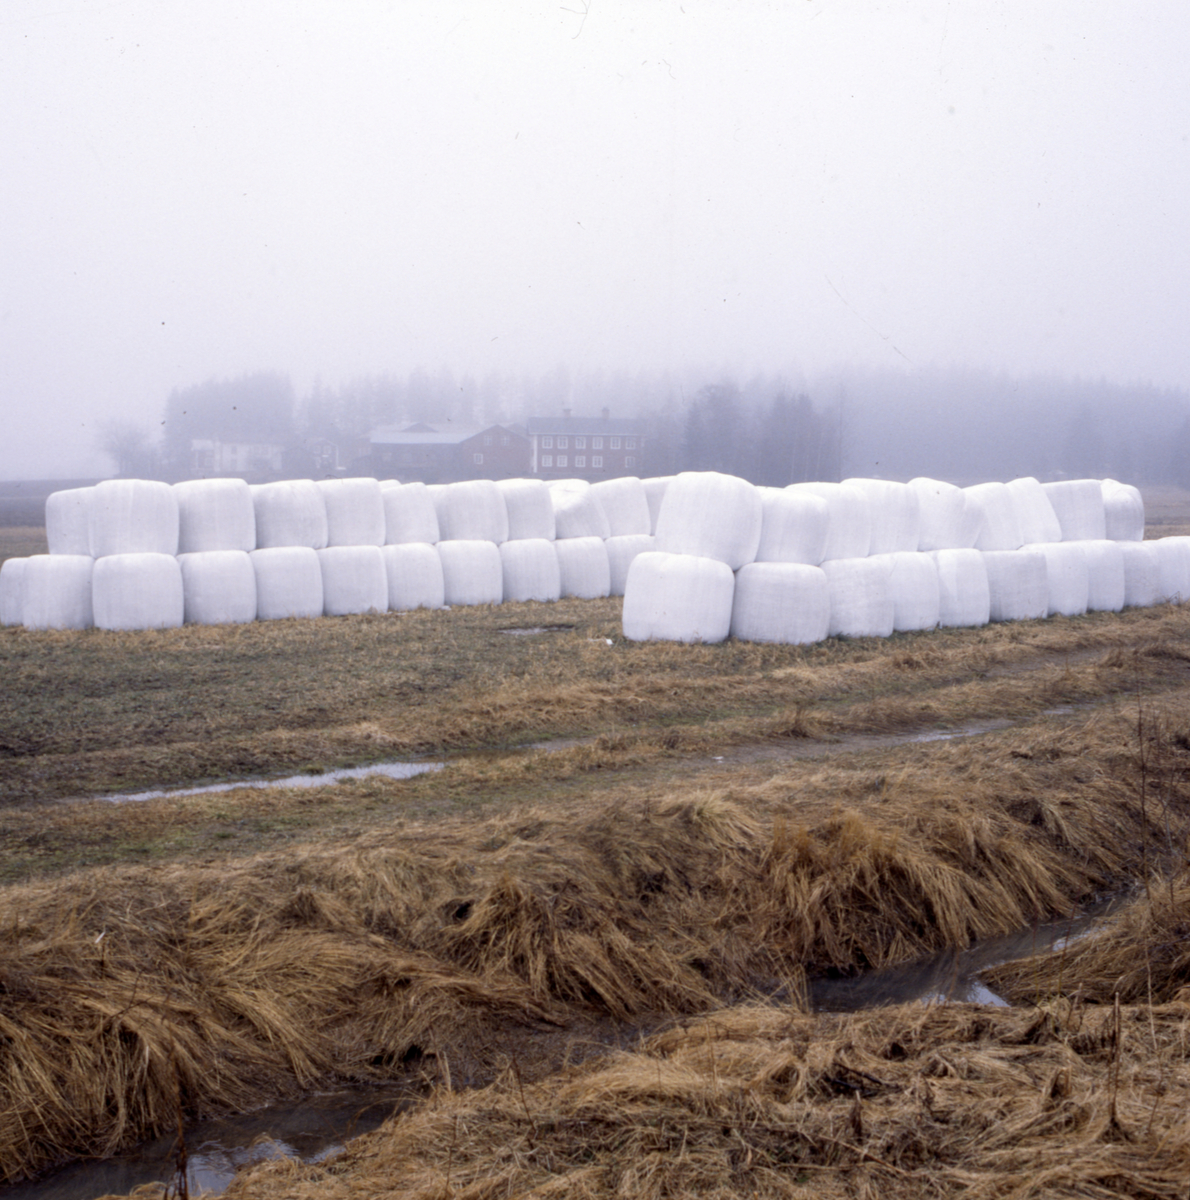 En stor mängd ensilagebalar staplade ovanpå varandra. I bakgrunden syns en gård med flera byggnader i dimman.